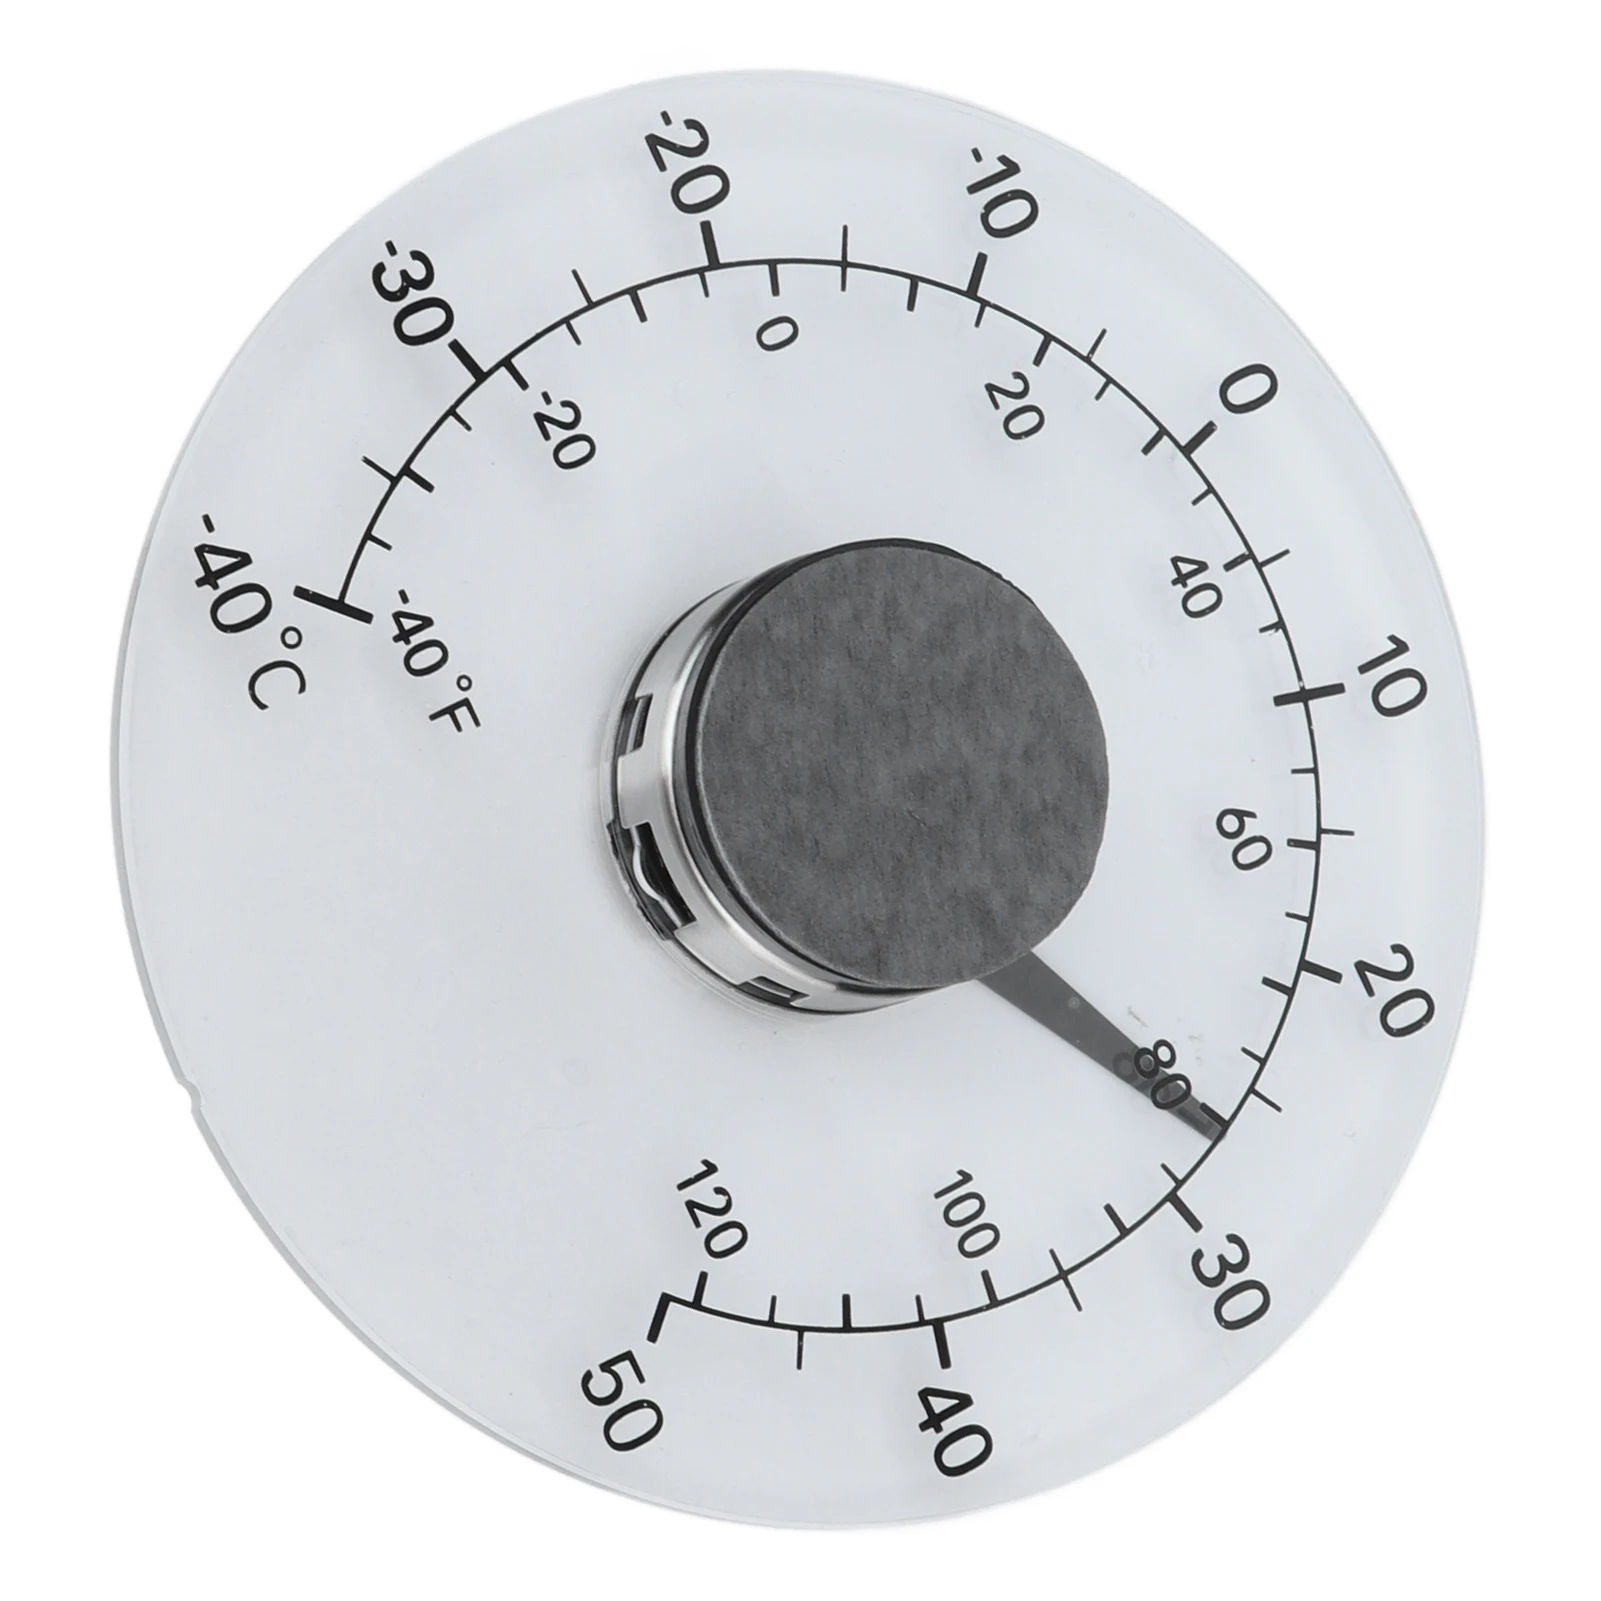 

Наружный термометр, прозрачный водонепроницаемый клейкий измеритель температуры для дверей и окон, от-40 до 50 ℃, для домашних фермерских и теплиц